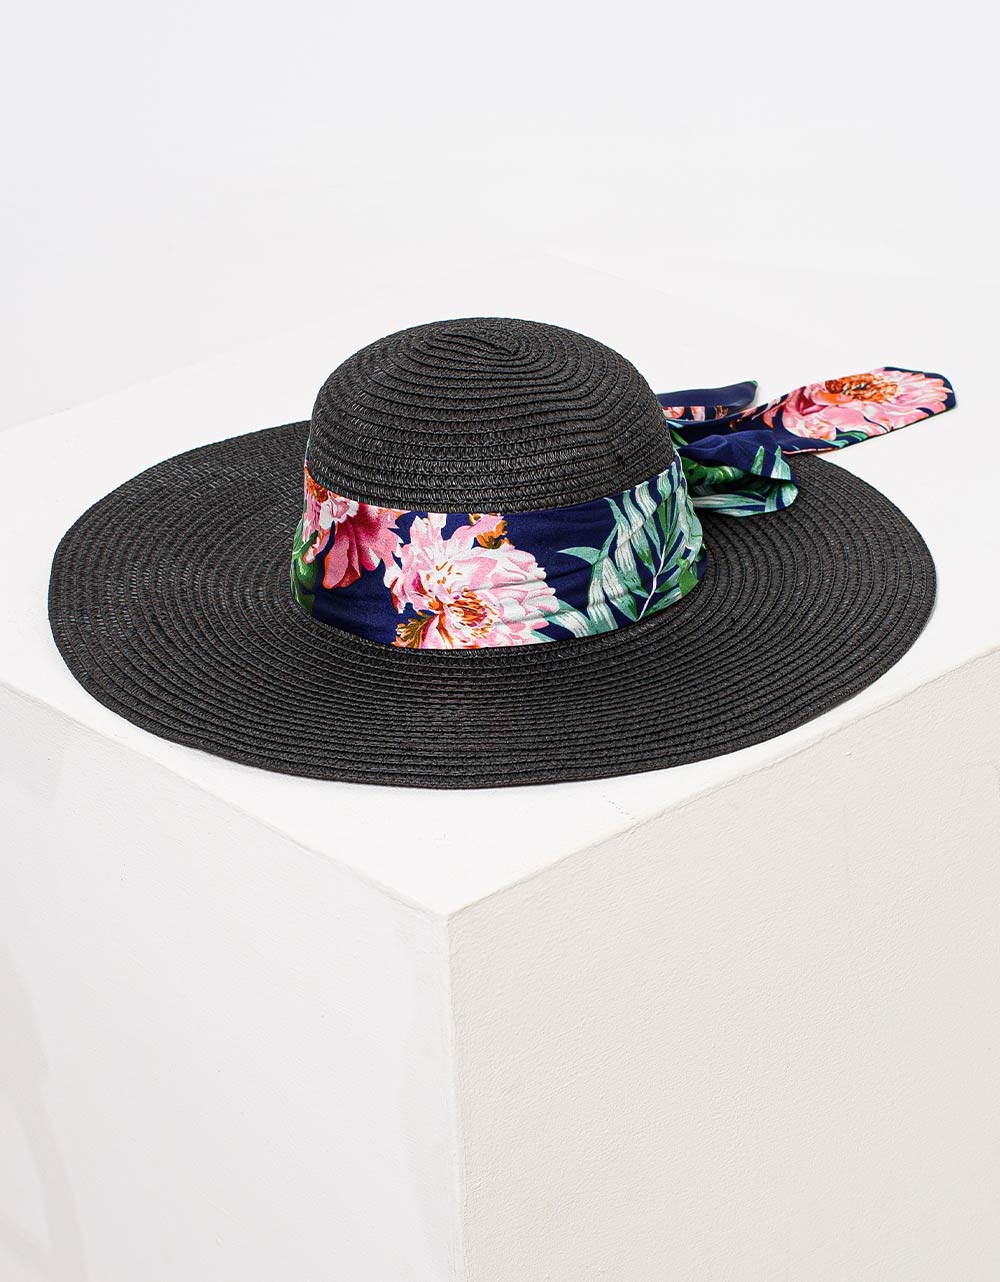 Εικόνα από Γυναικεία καπέλα με floral κορδέλα Μαύρο